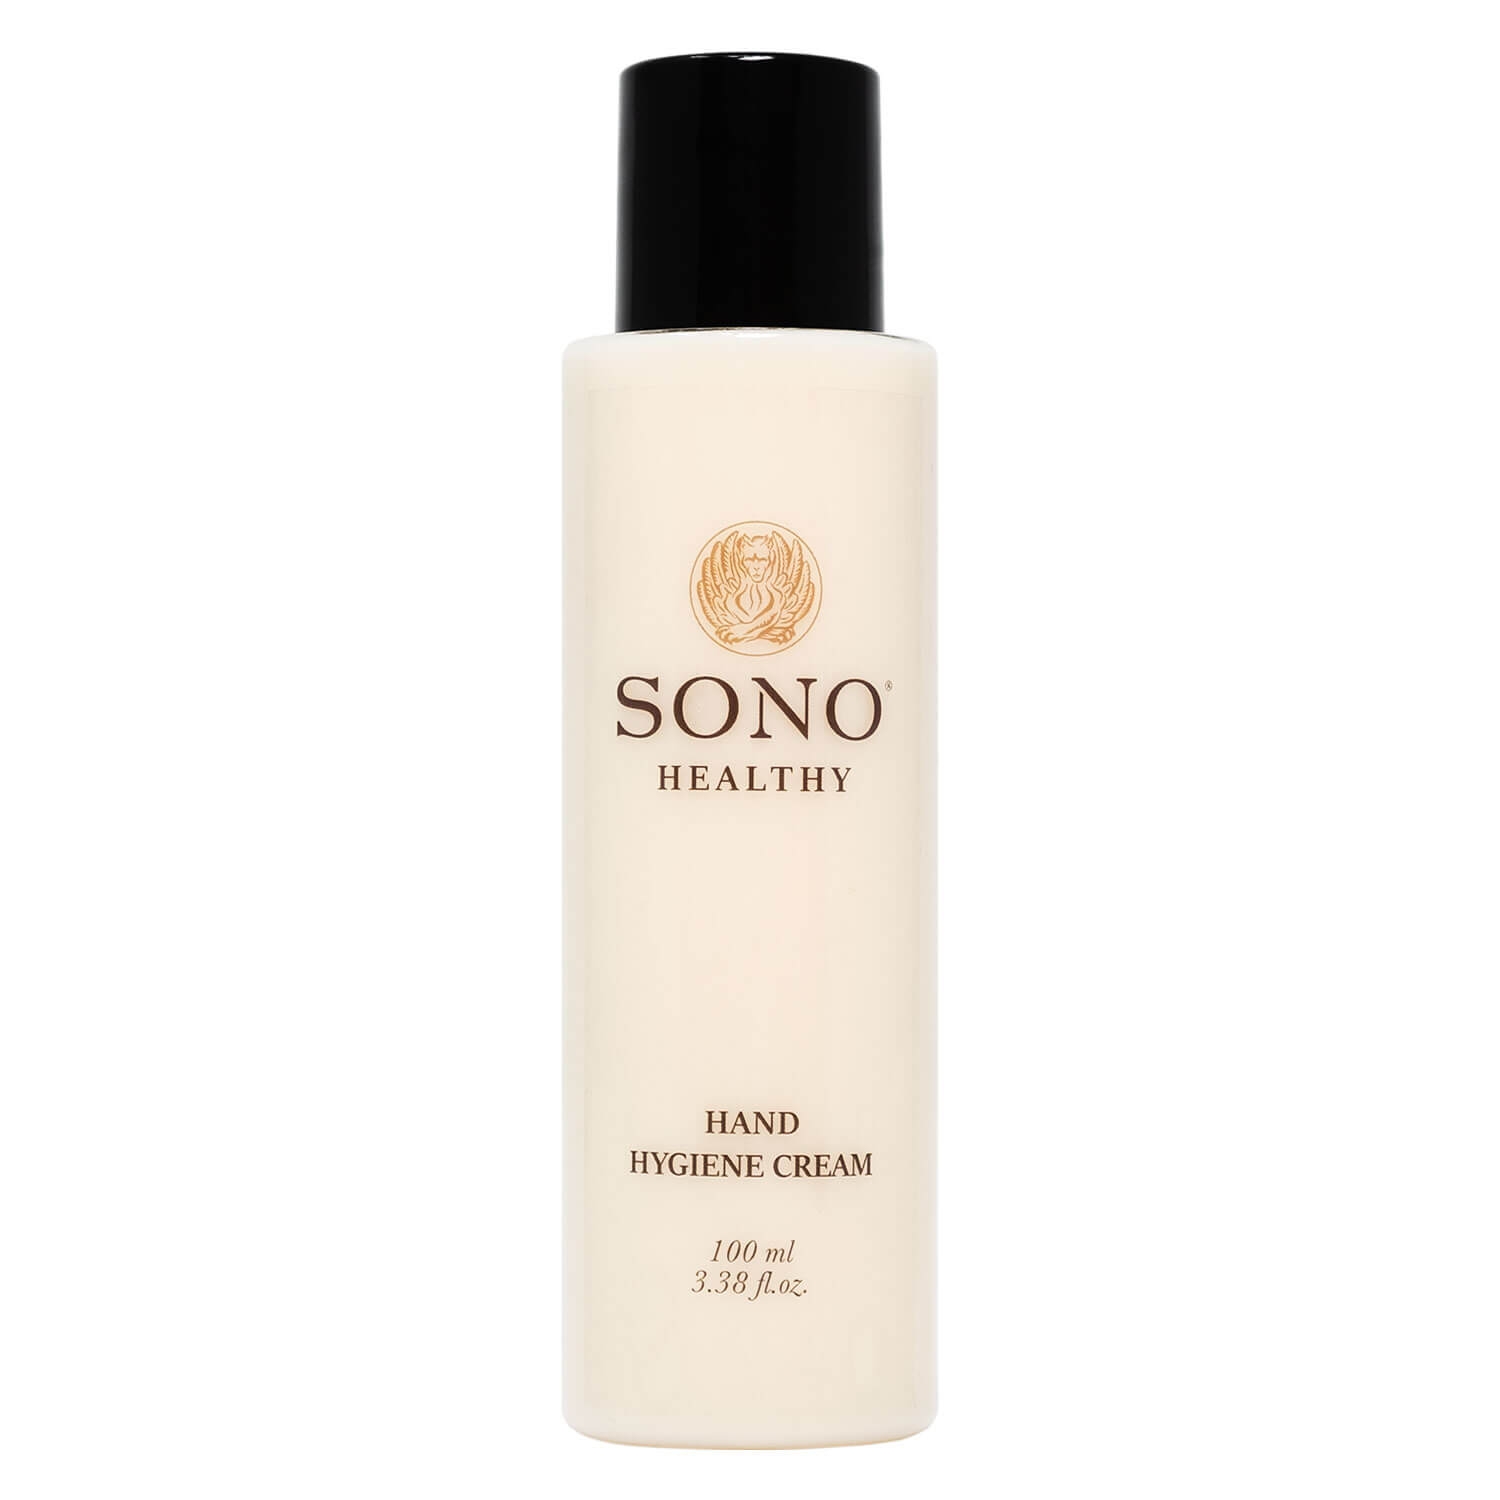 Produktbild von SONO Healthy - Hand Hygiene Cream